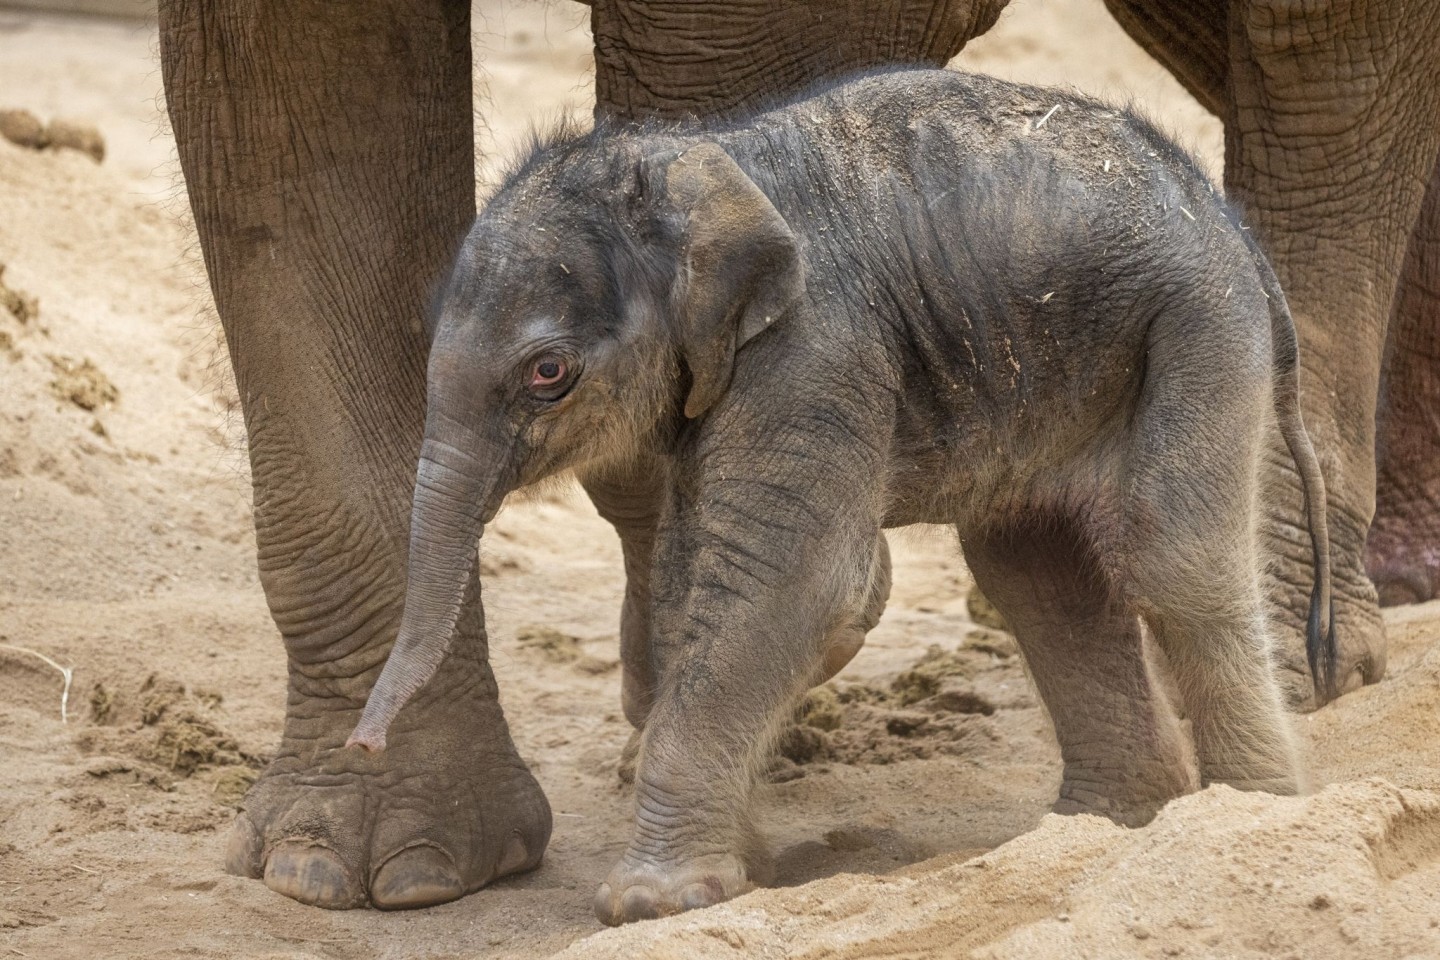 Elefantenmama Dokkoon hat das Kalb nach 22-monatiger Schwangerschaft gesund zur Welt gebracht.